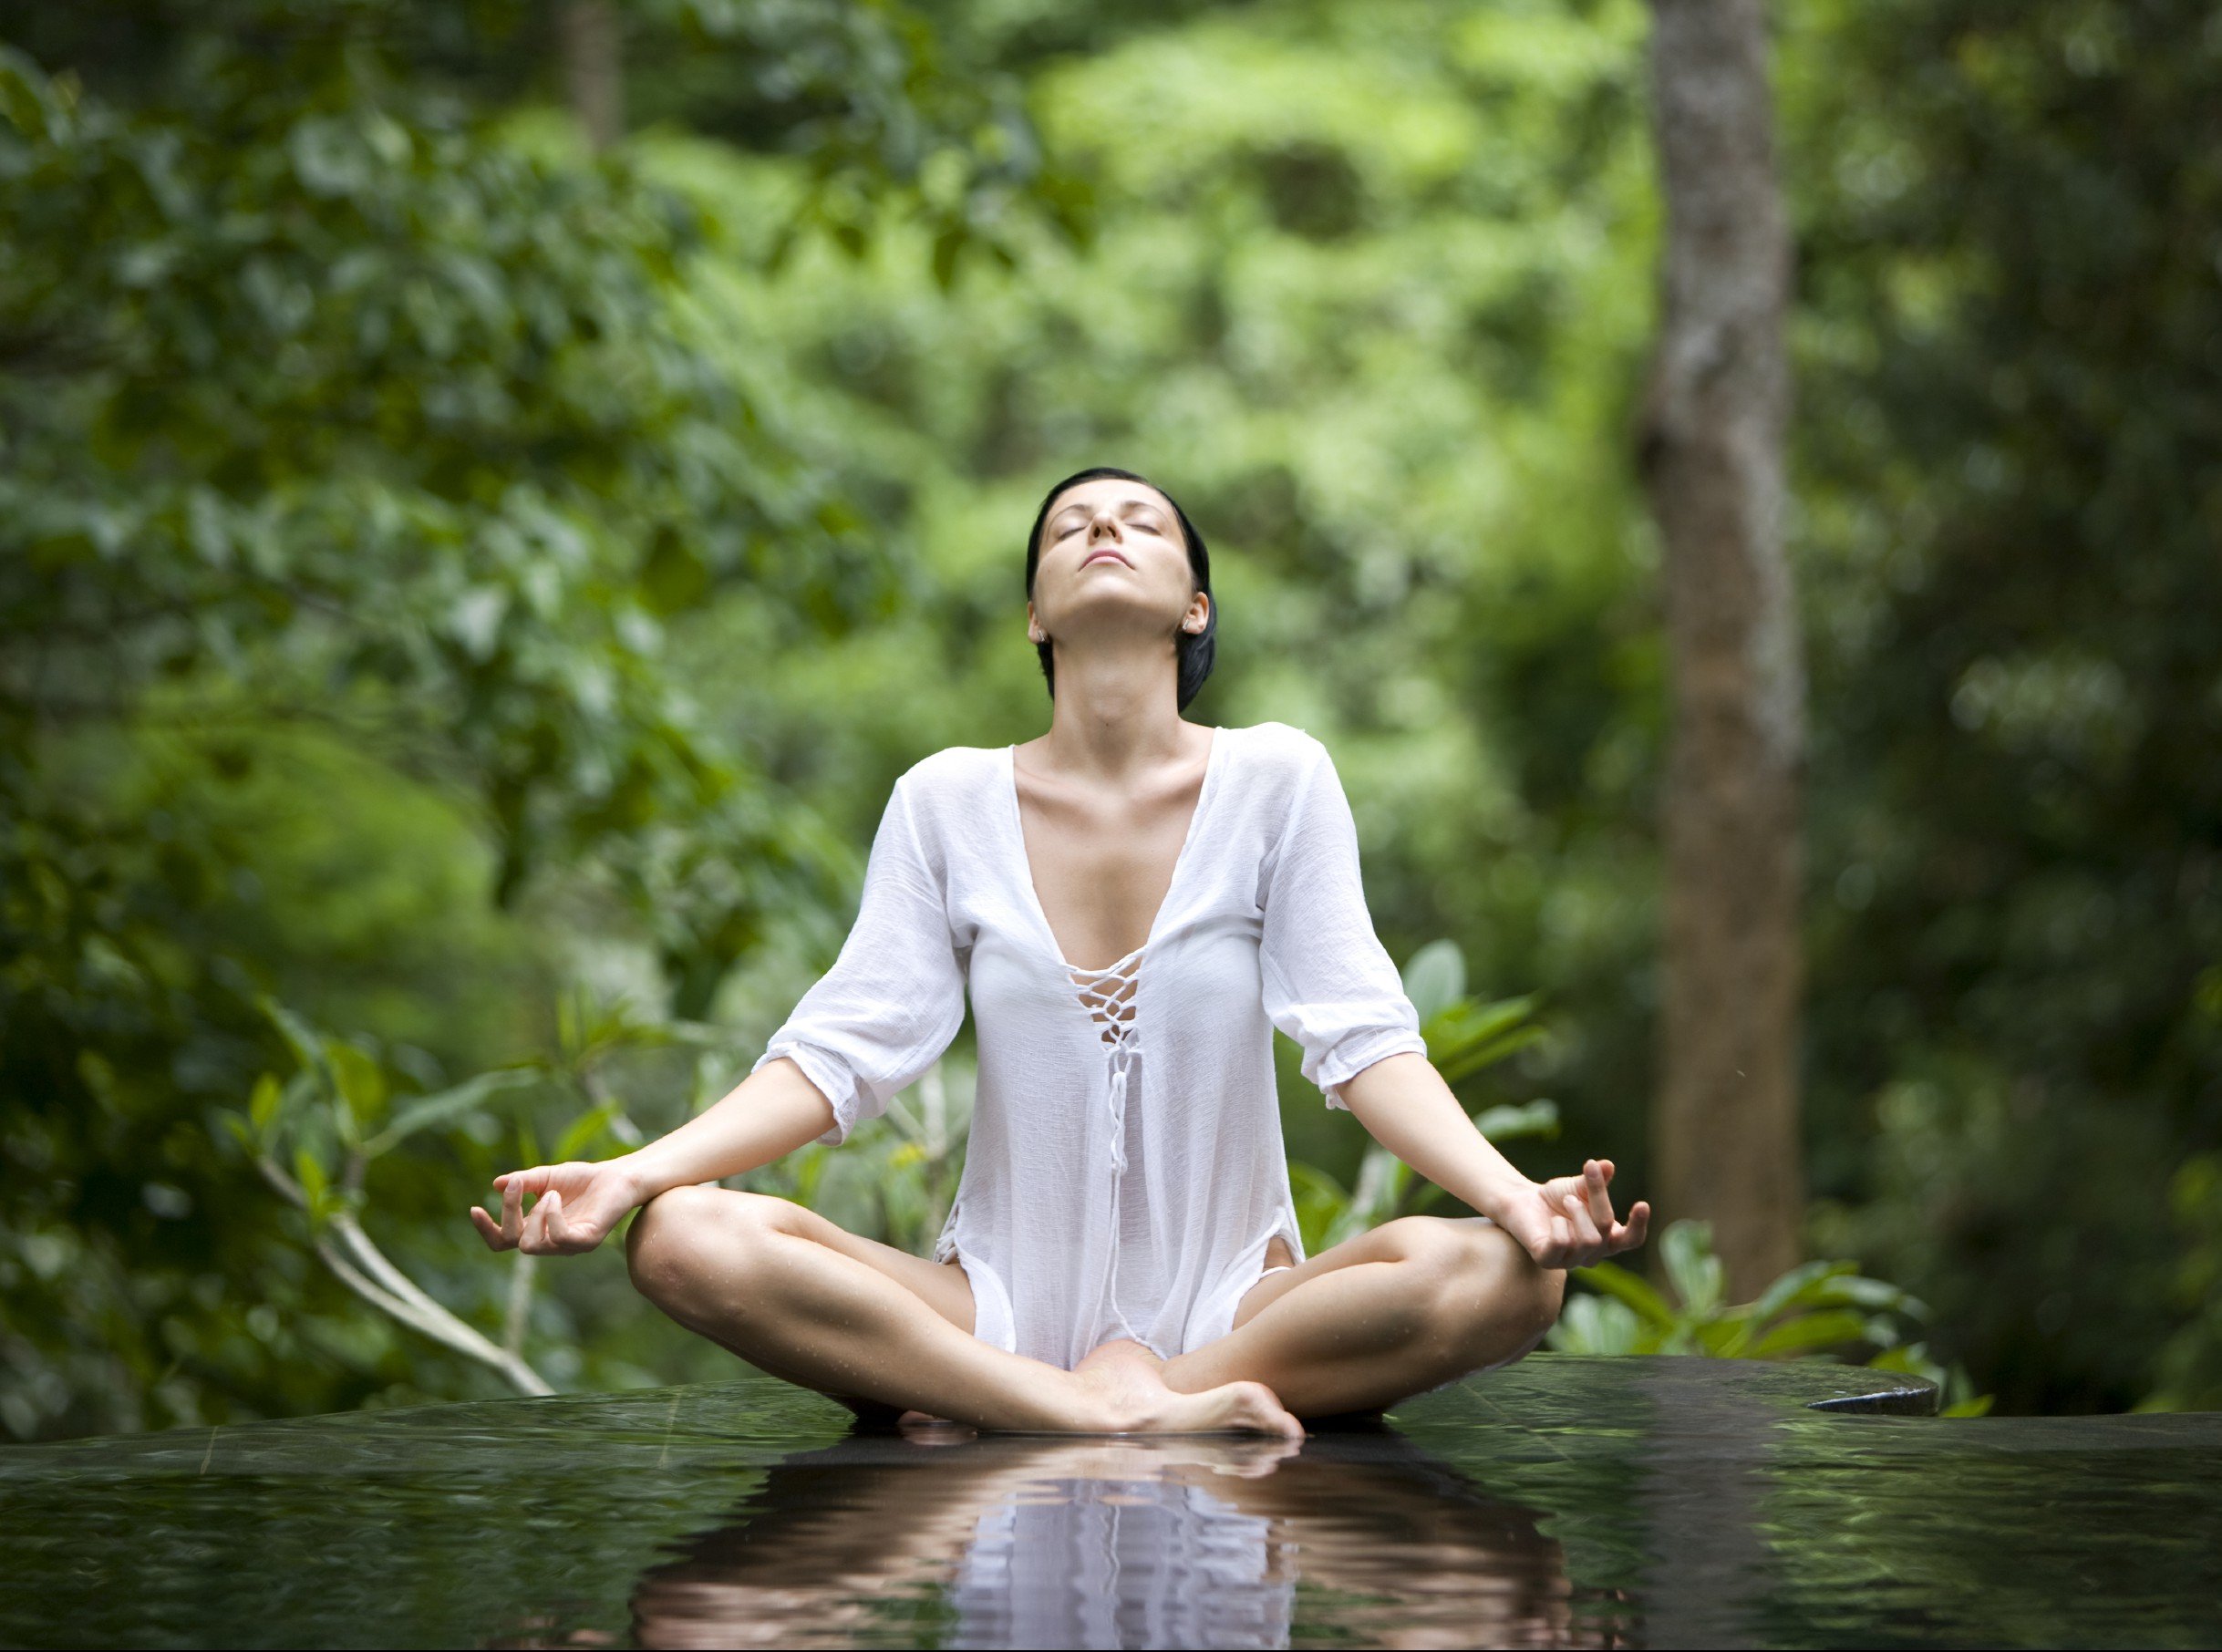 Релаксация дыханием. Расслабление. Девушка медитирует. Медитация на расслабление. Человек в медитации.